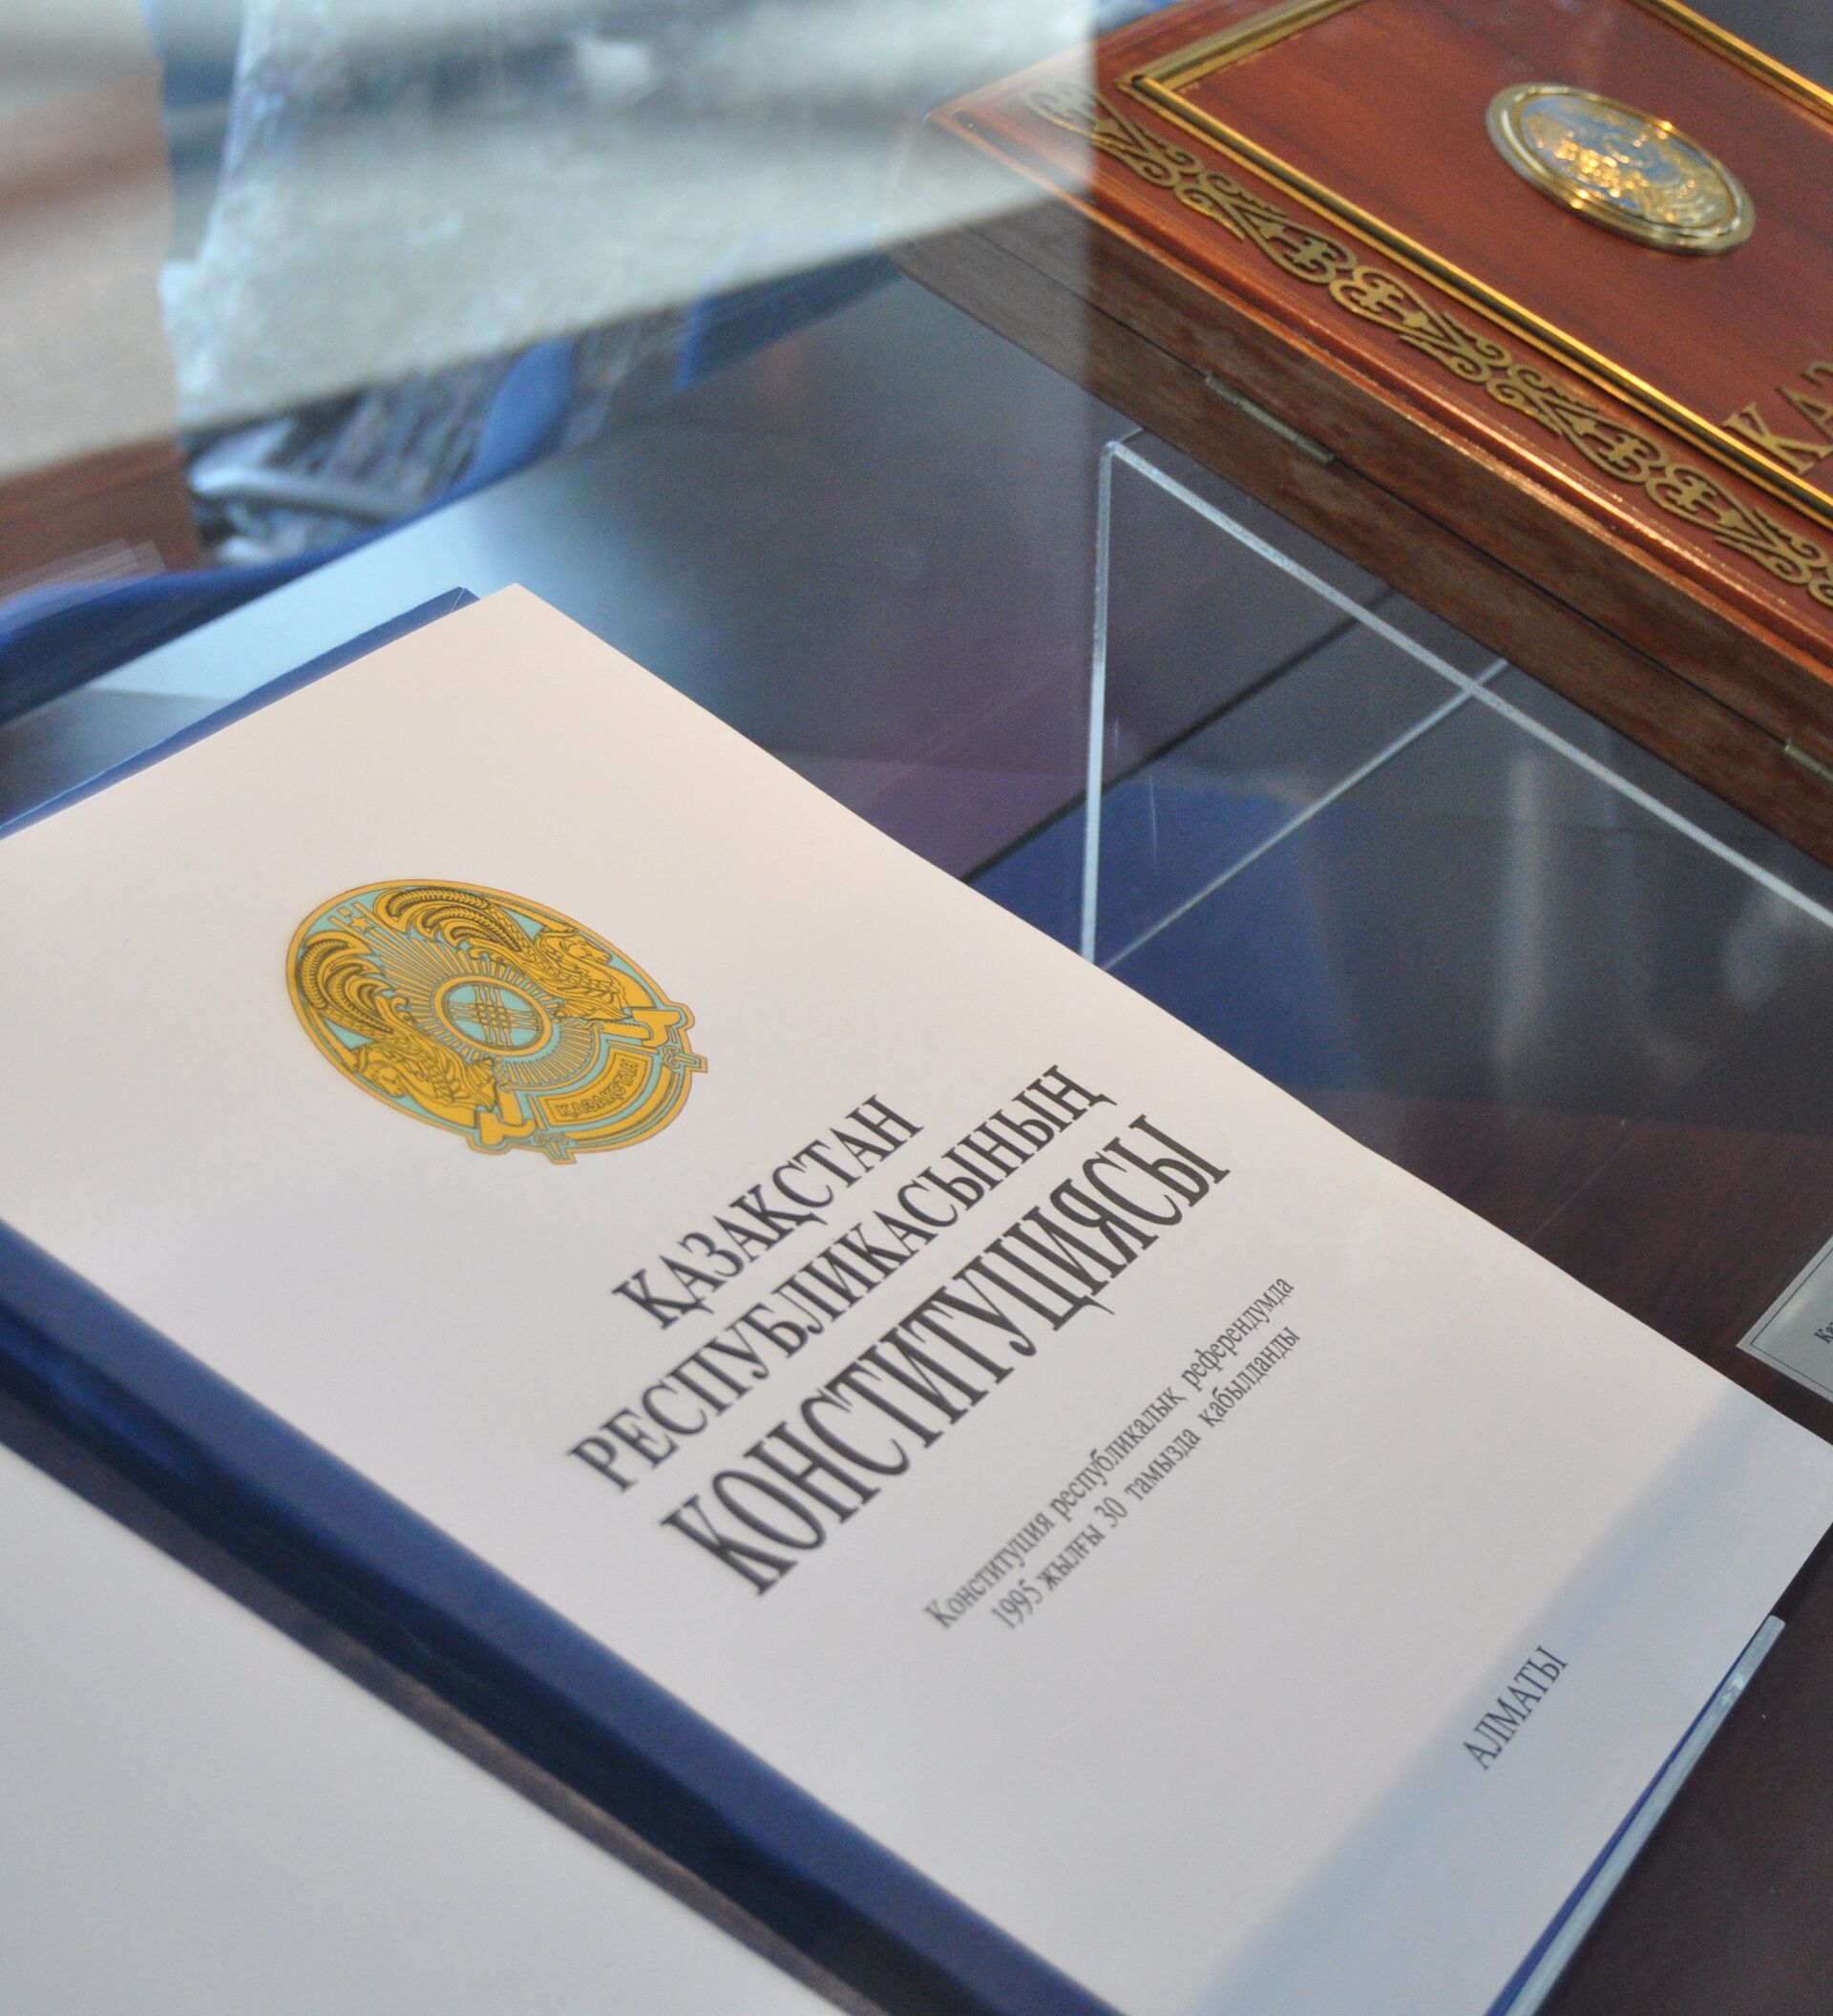 Принятие 1 республиканской конституции. Конституция Казахстана 1995. Конституция Казахстана 1993. 30 Августа 1995 года принятие Конституции РК. Год принятия Конституции РК.